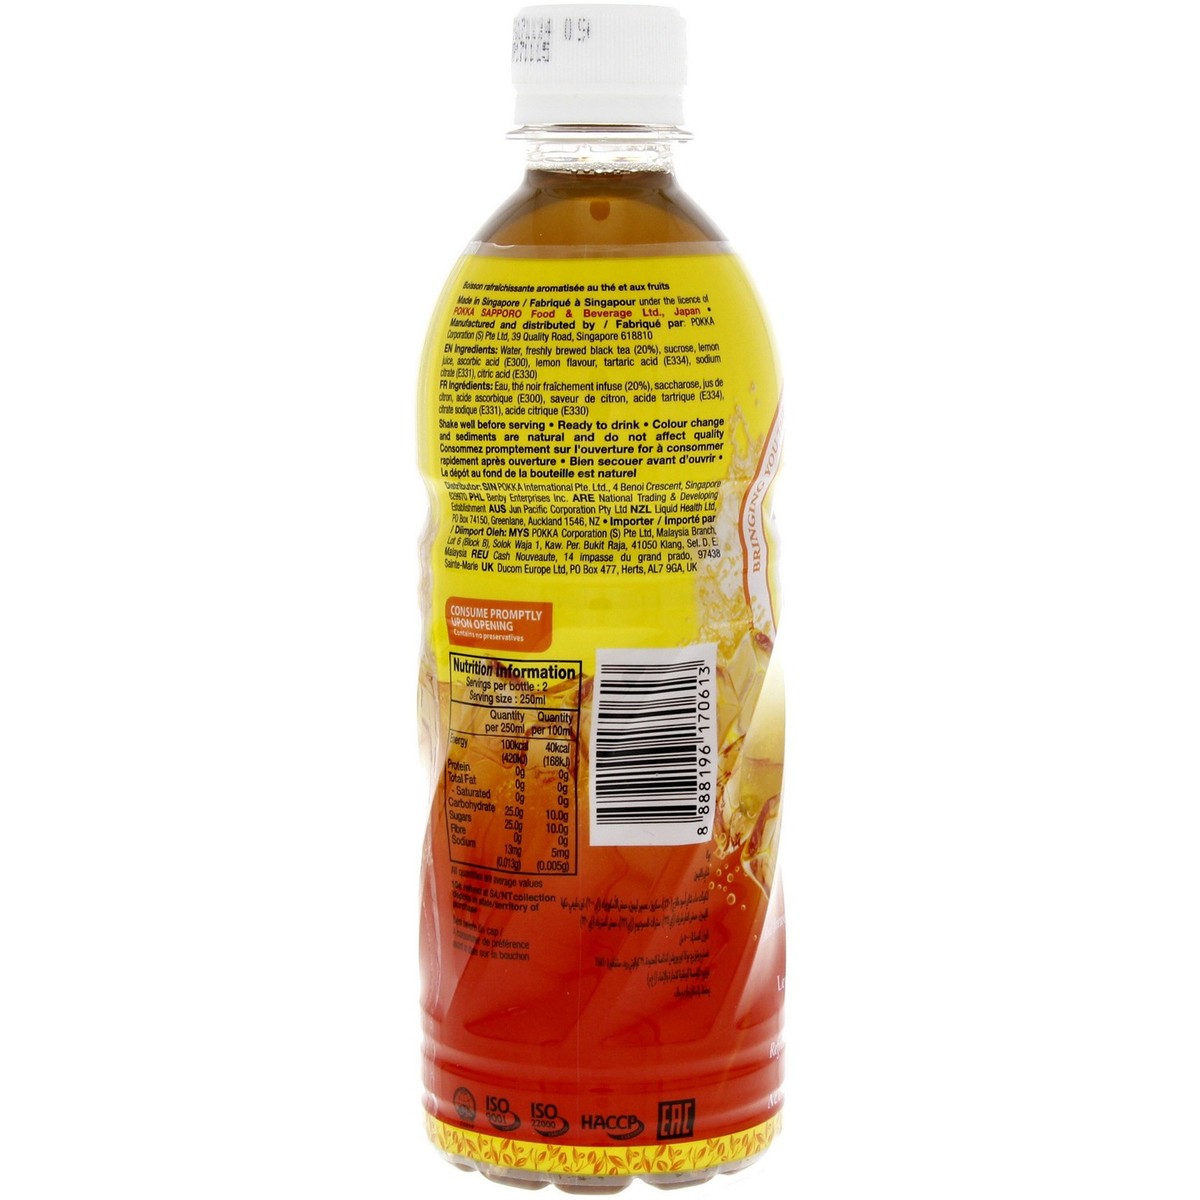 Pokka Ice Lemon Tea 500 ml